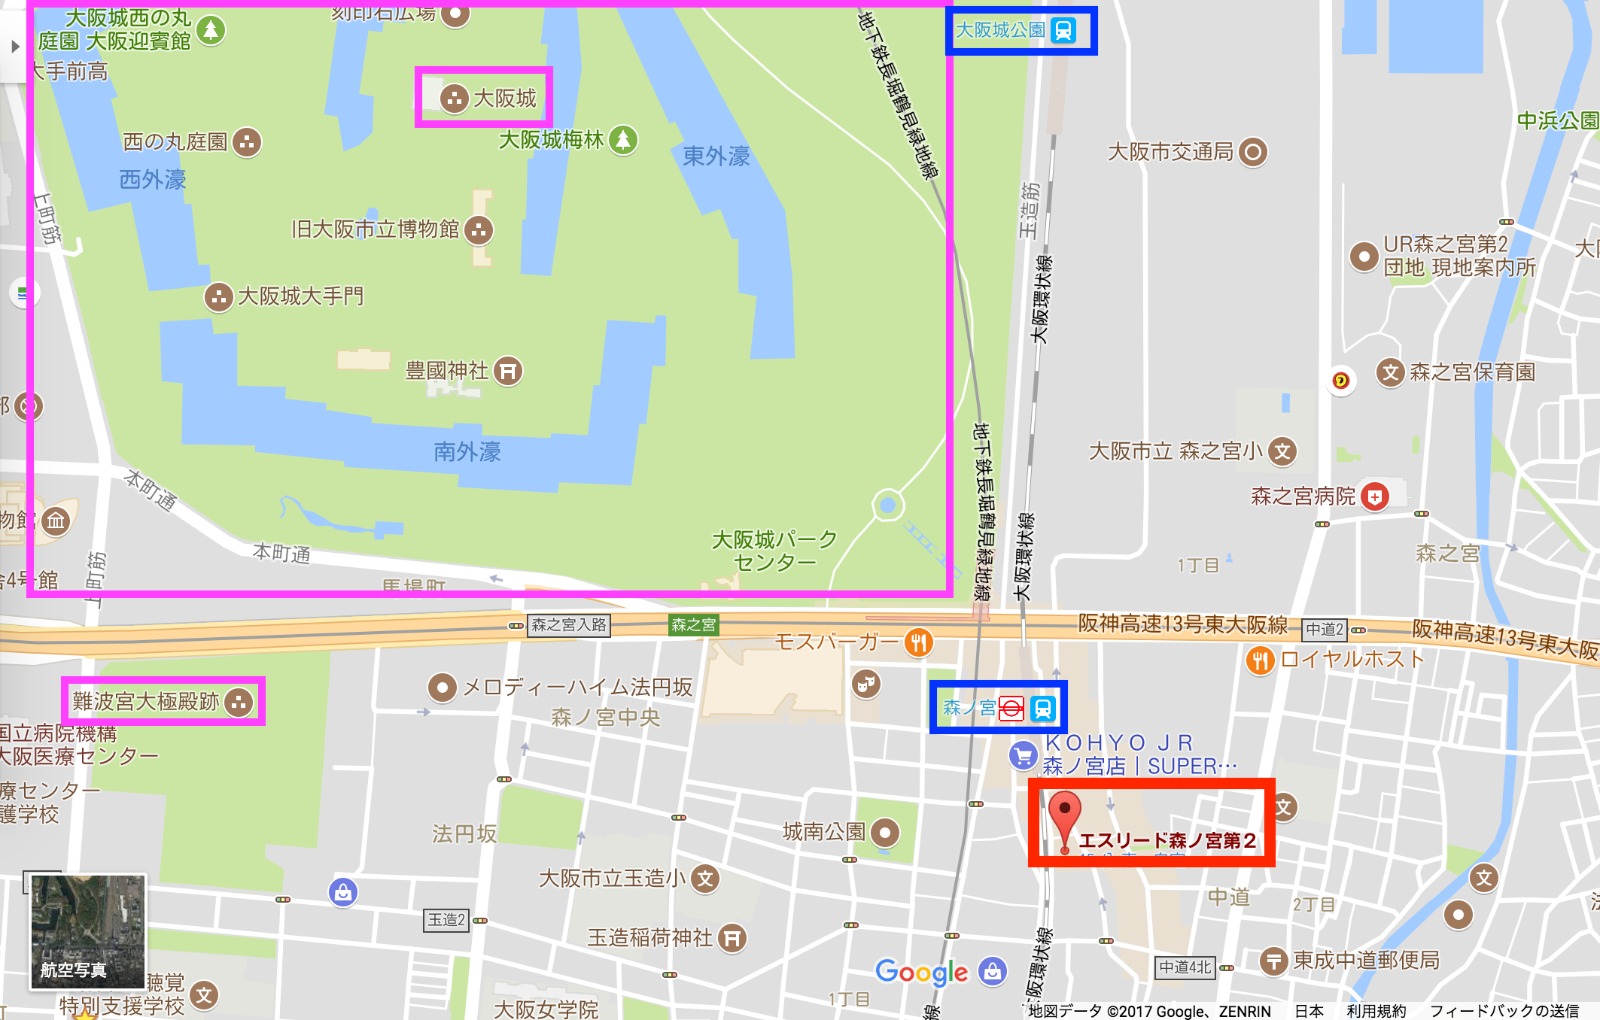 想生活便利又想好好感受大阪在地文藝氣息, 森ノ宮絕對是首選，只需HK$53萬